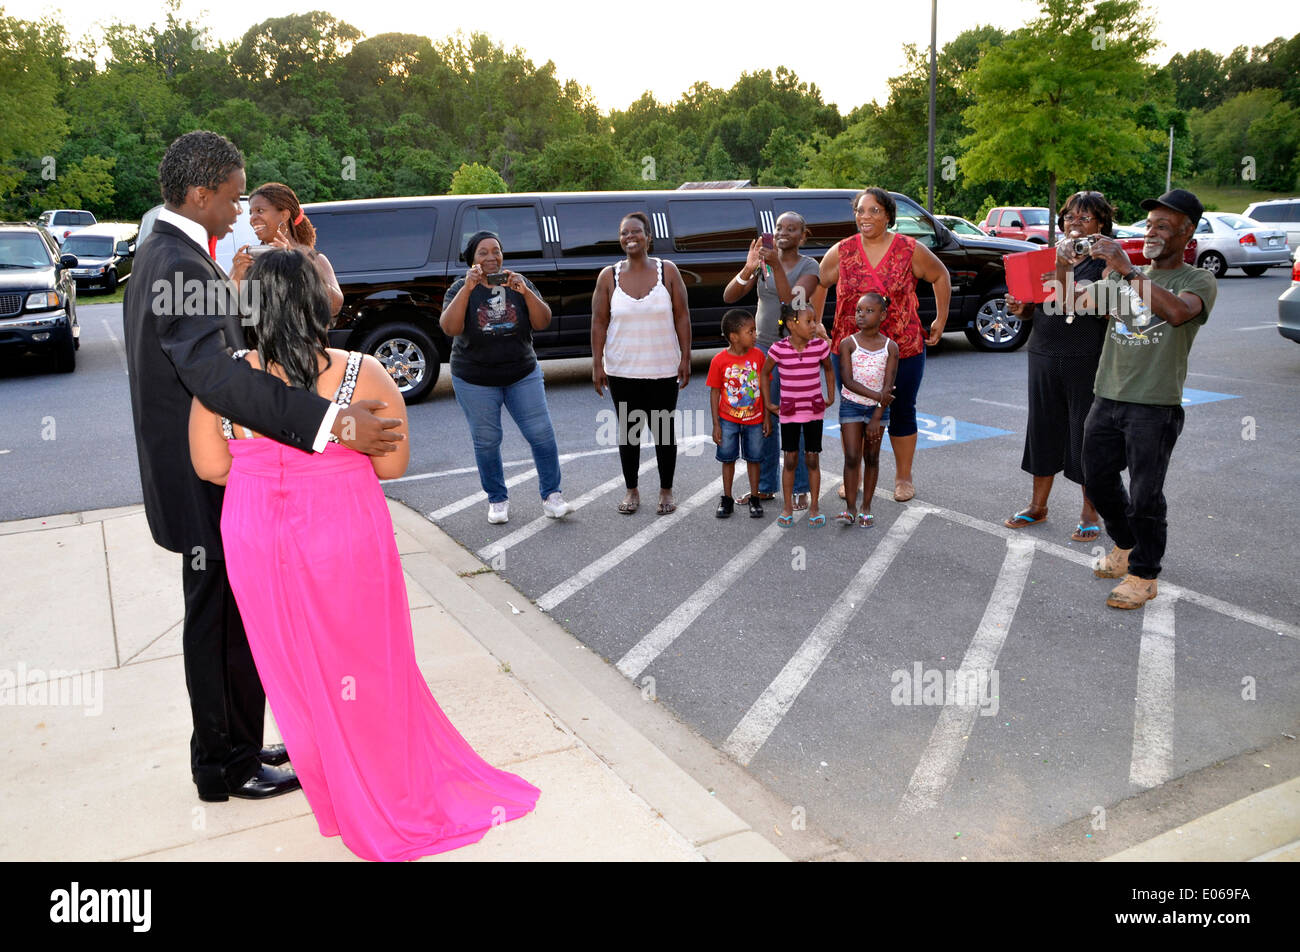 Los familiares se alinean para tomar fotografías de una pareja en su llegada al high school prom. Foto de stock